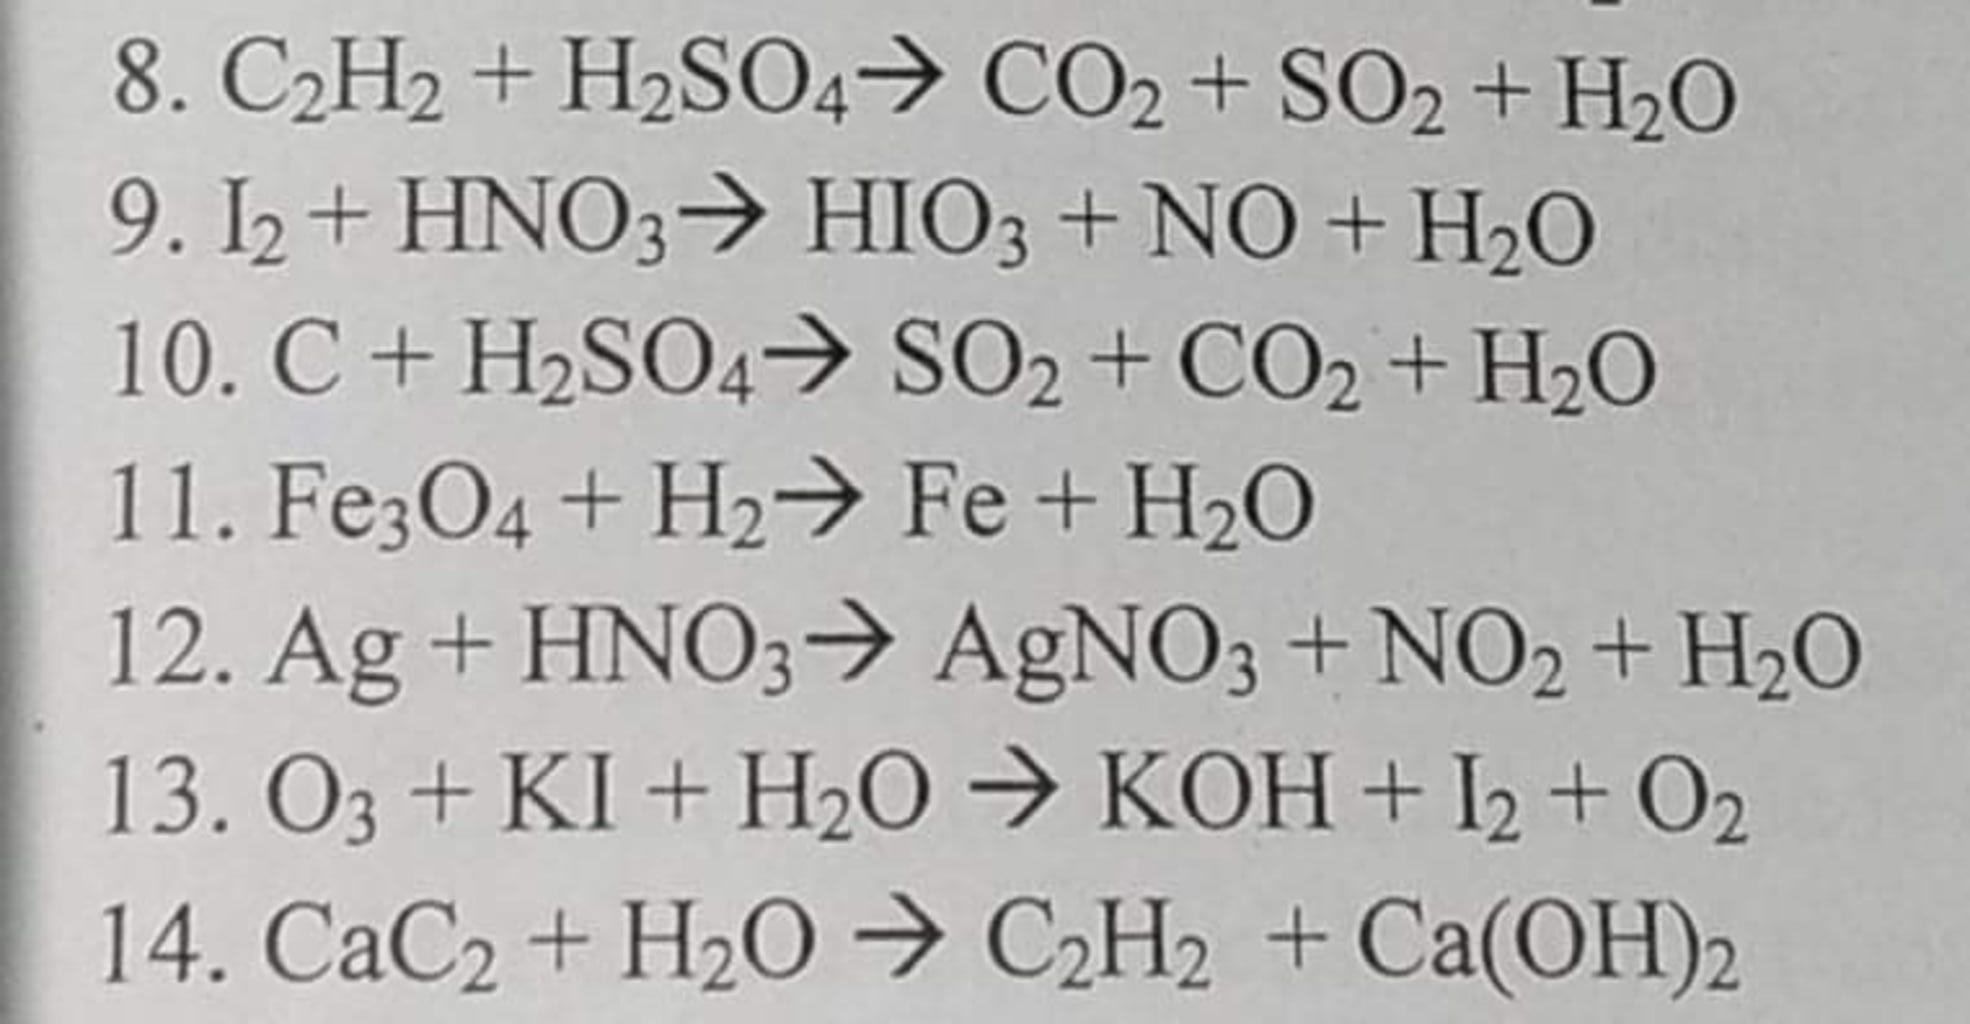 Phản ứng hoá học của c2h2 + h2so4 - Cách thực hiện và tính toán số mol